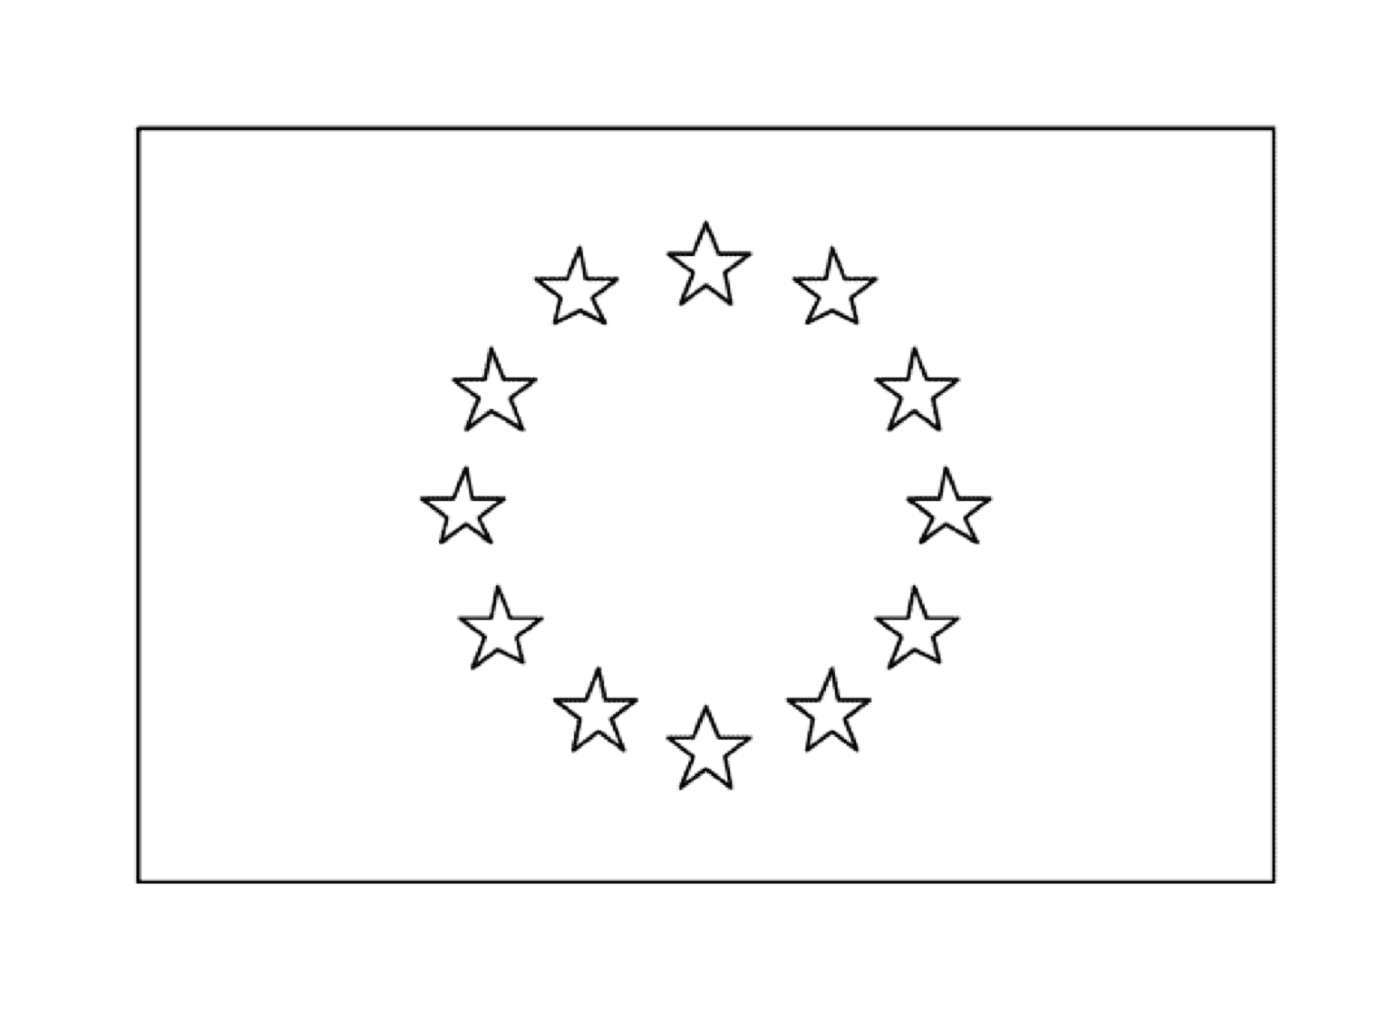  Una bandera europea 